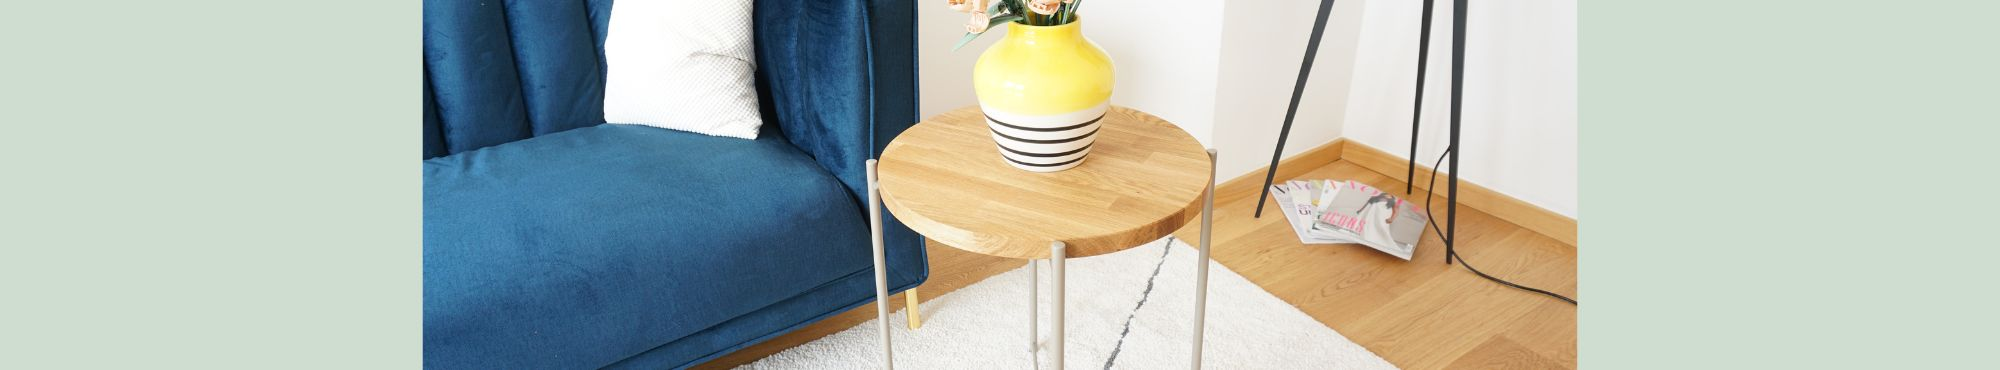 Ikea Gladom Tisch mit Deckplatte aus Holz